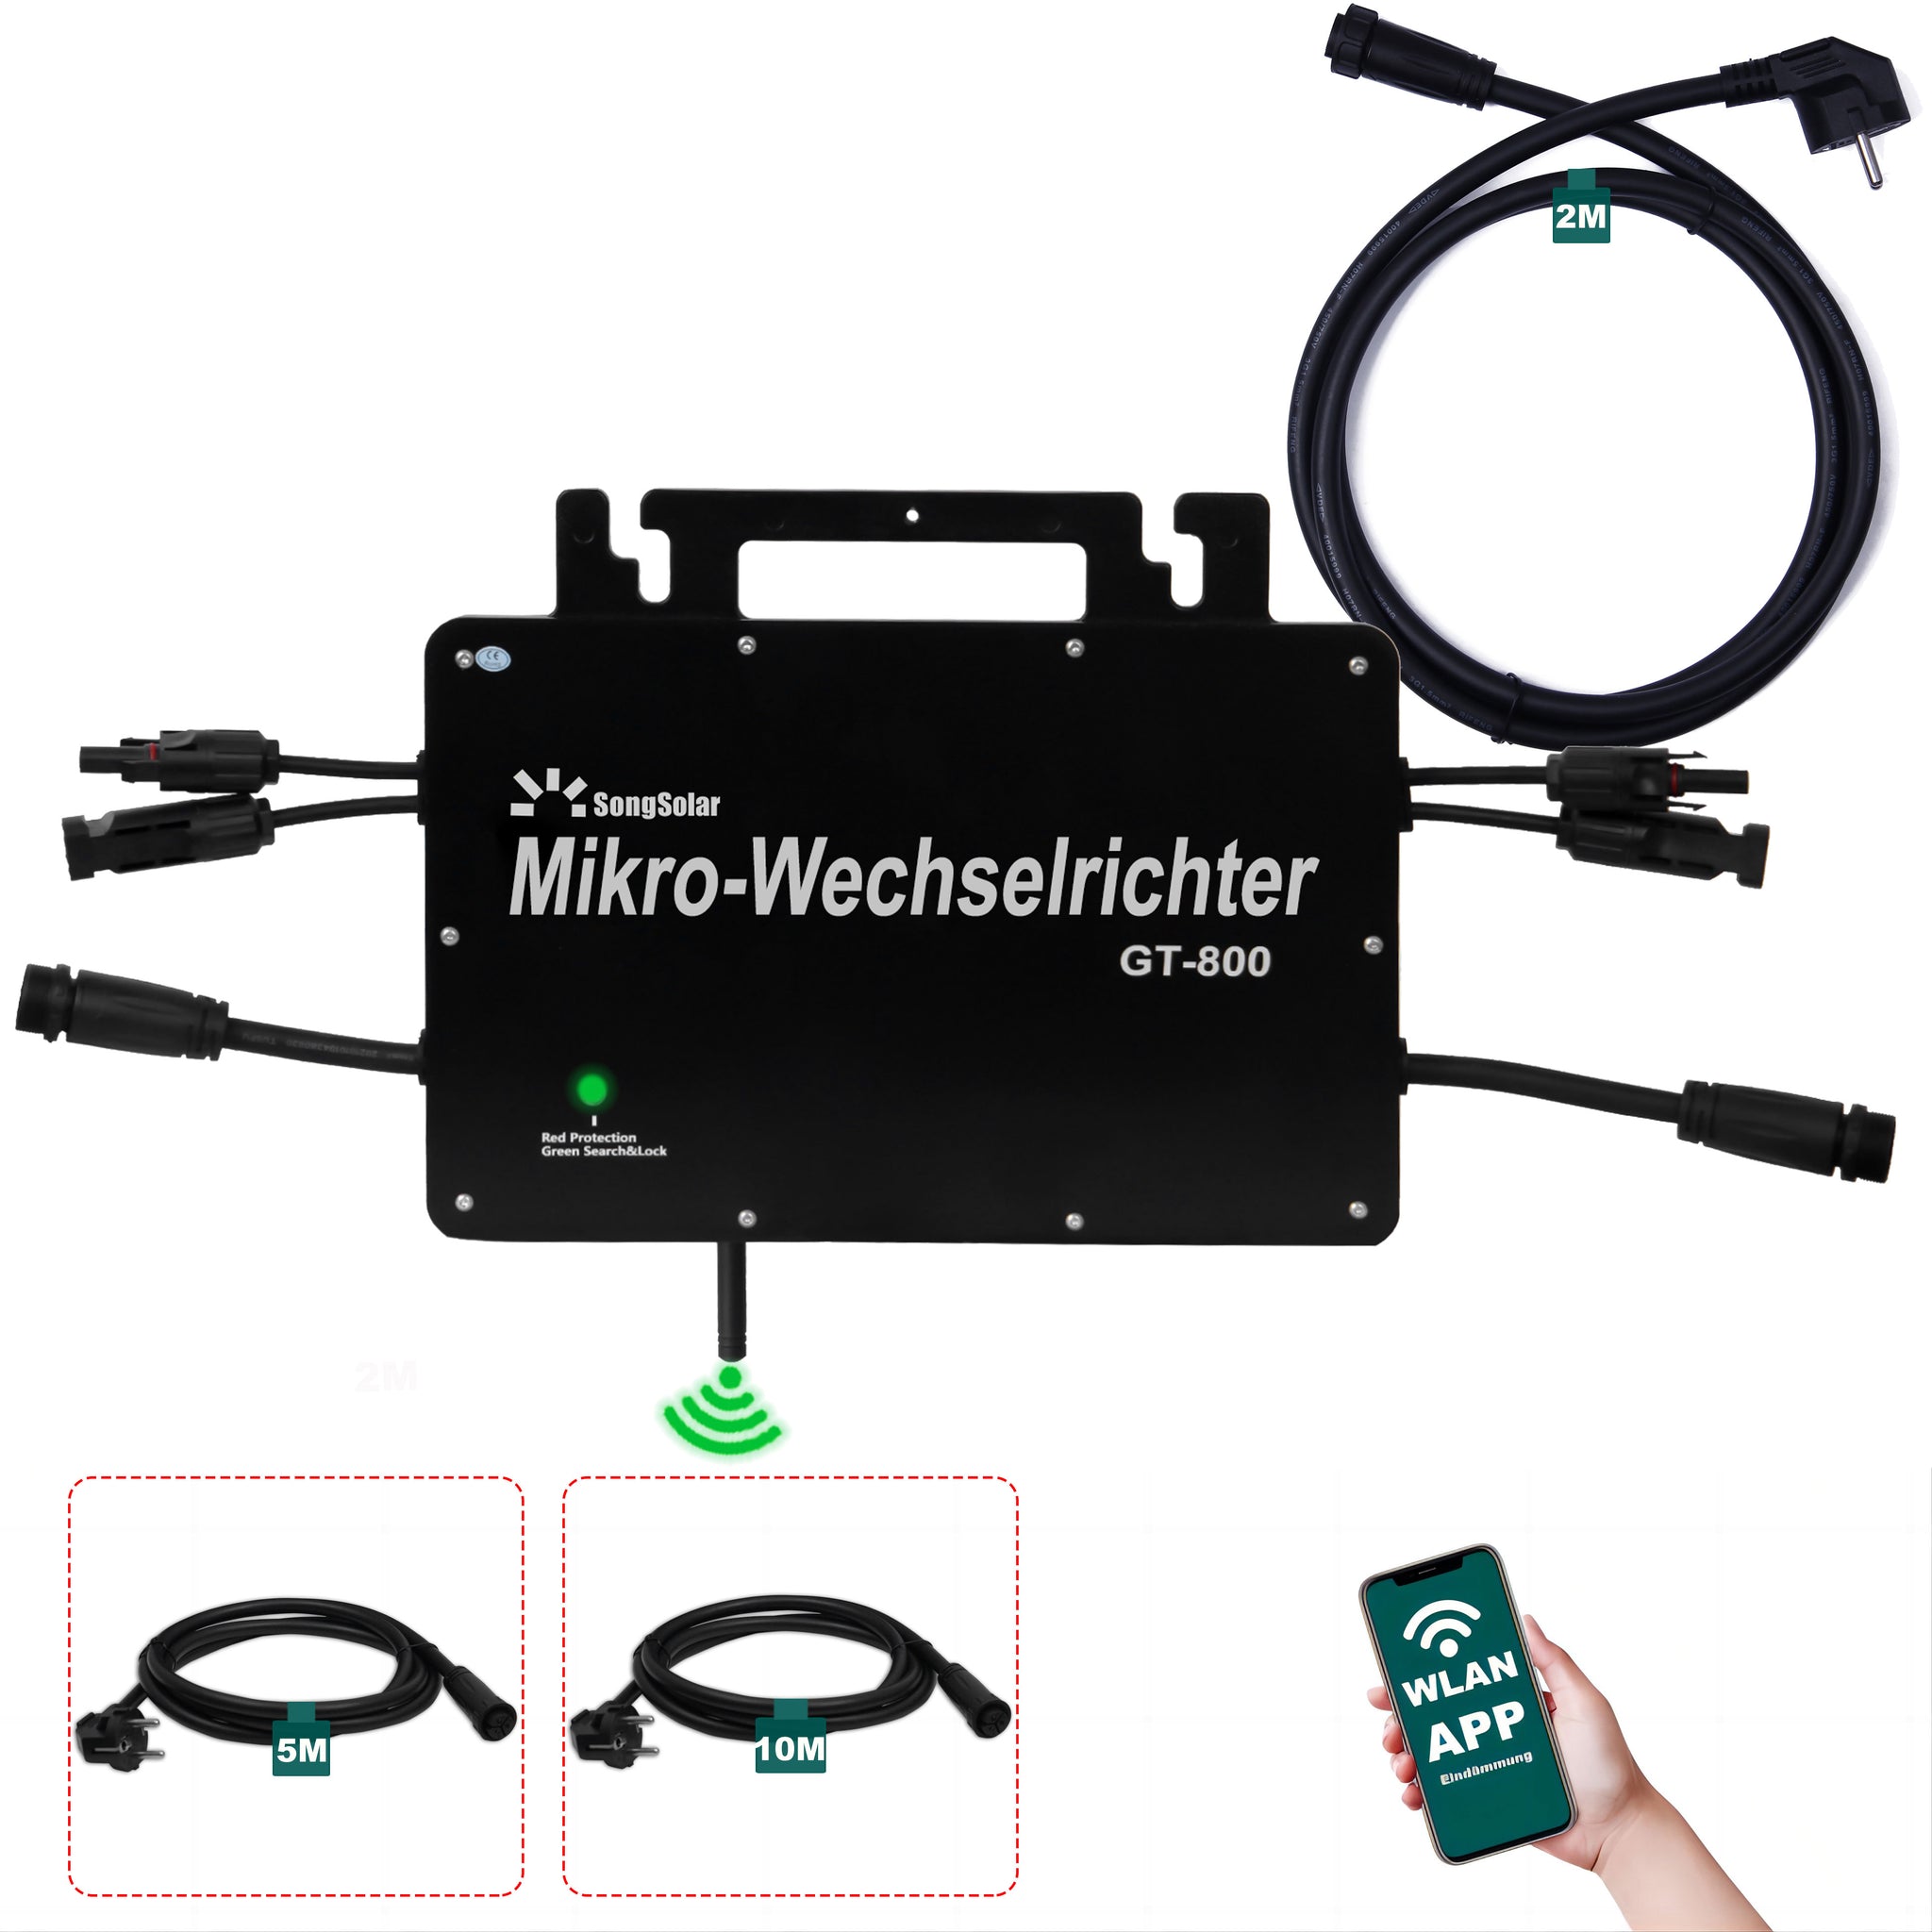 Micro inverter GT-800W 220V WiFi VDE Relay